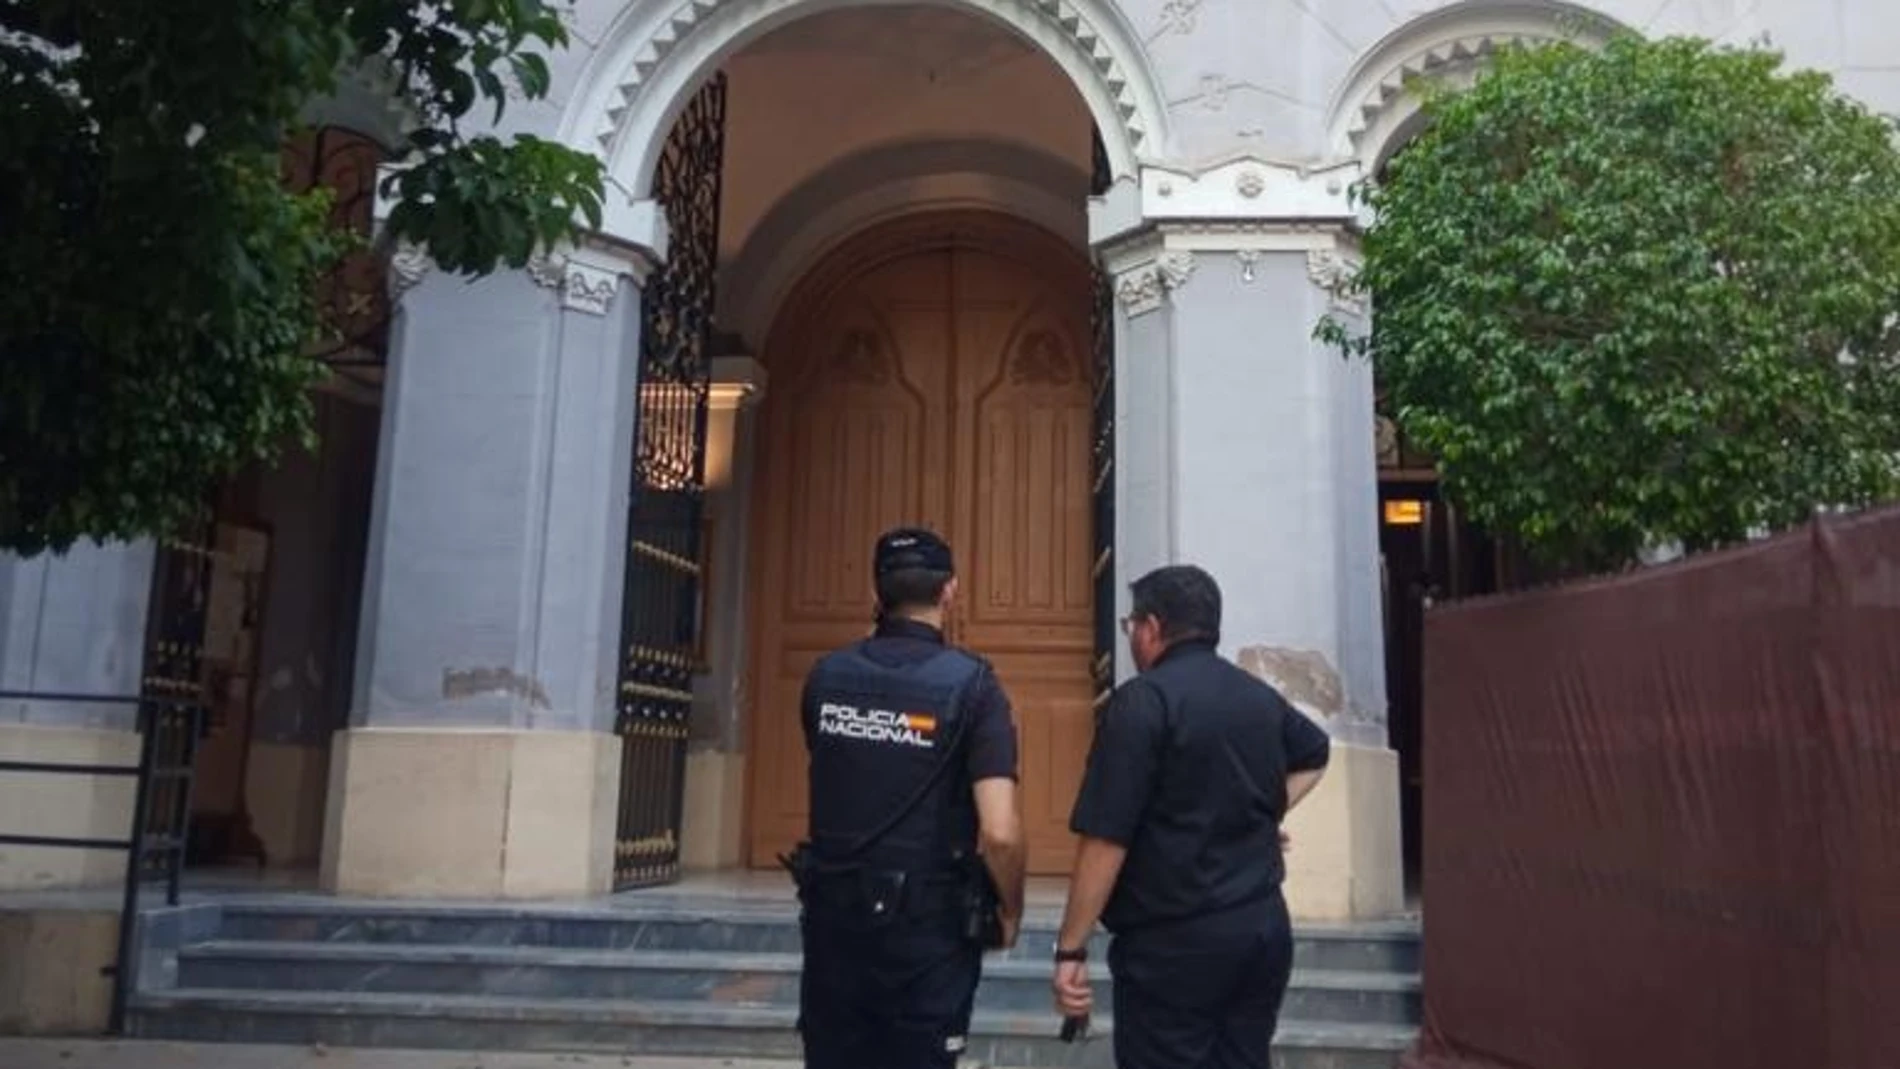 La Policía Nacional detiene a dos individuos cuando interrumpieron en una iglesia con gritos y gestos obscenos la celebración del acto religioso